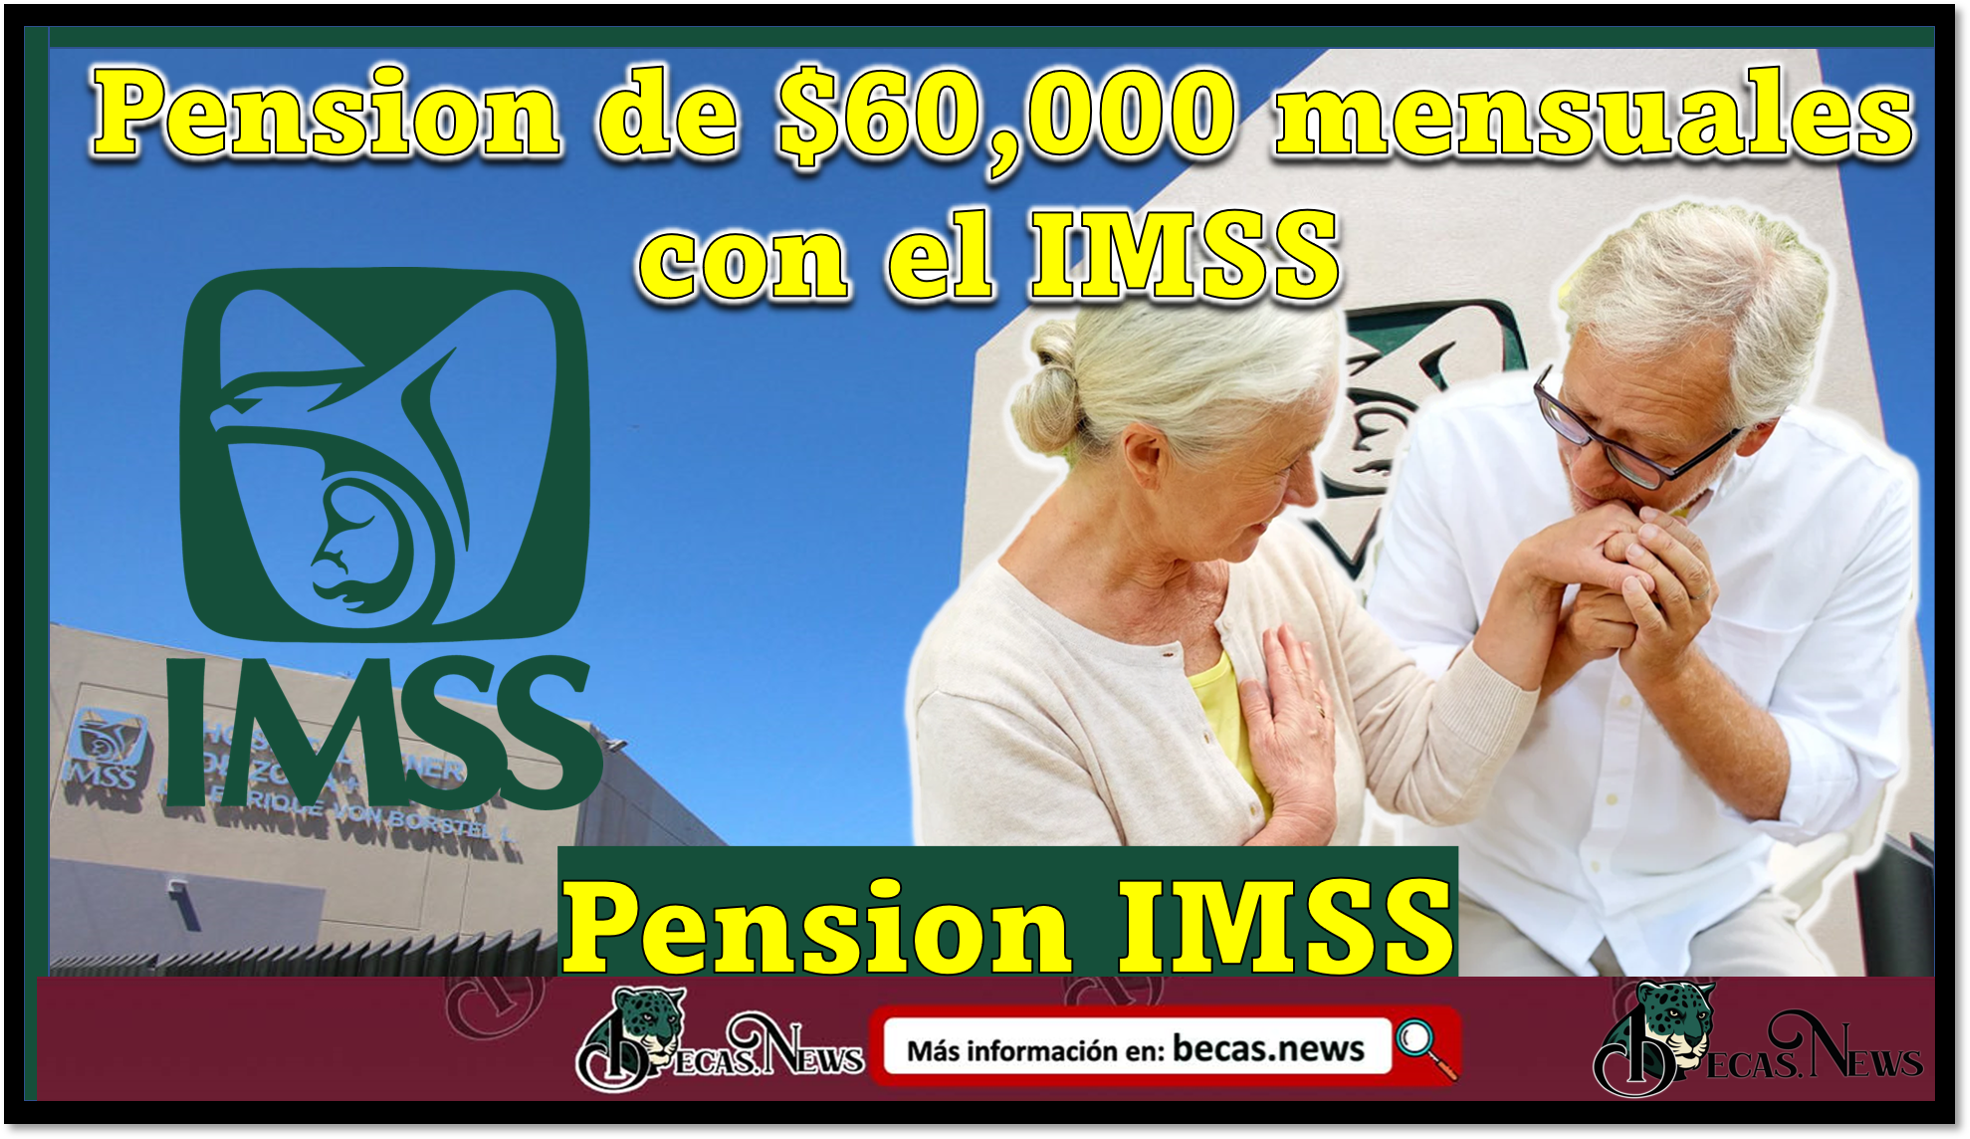 Pension de $60,000 mensuales con el IMSS